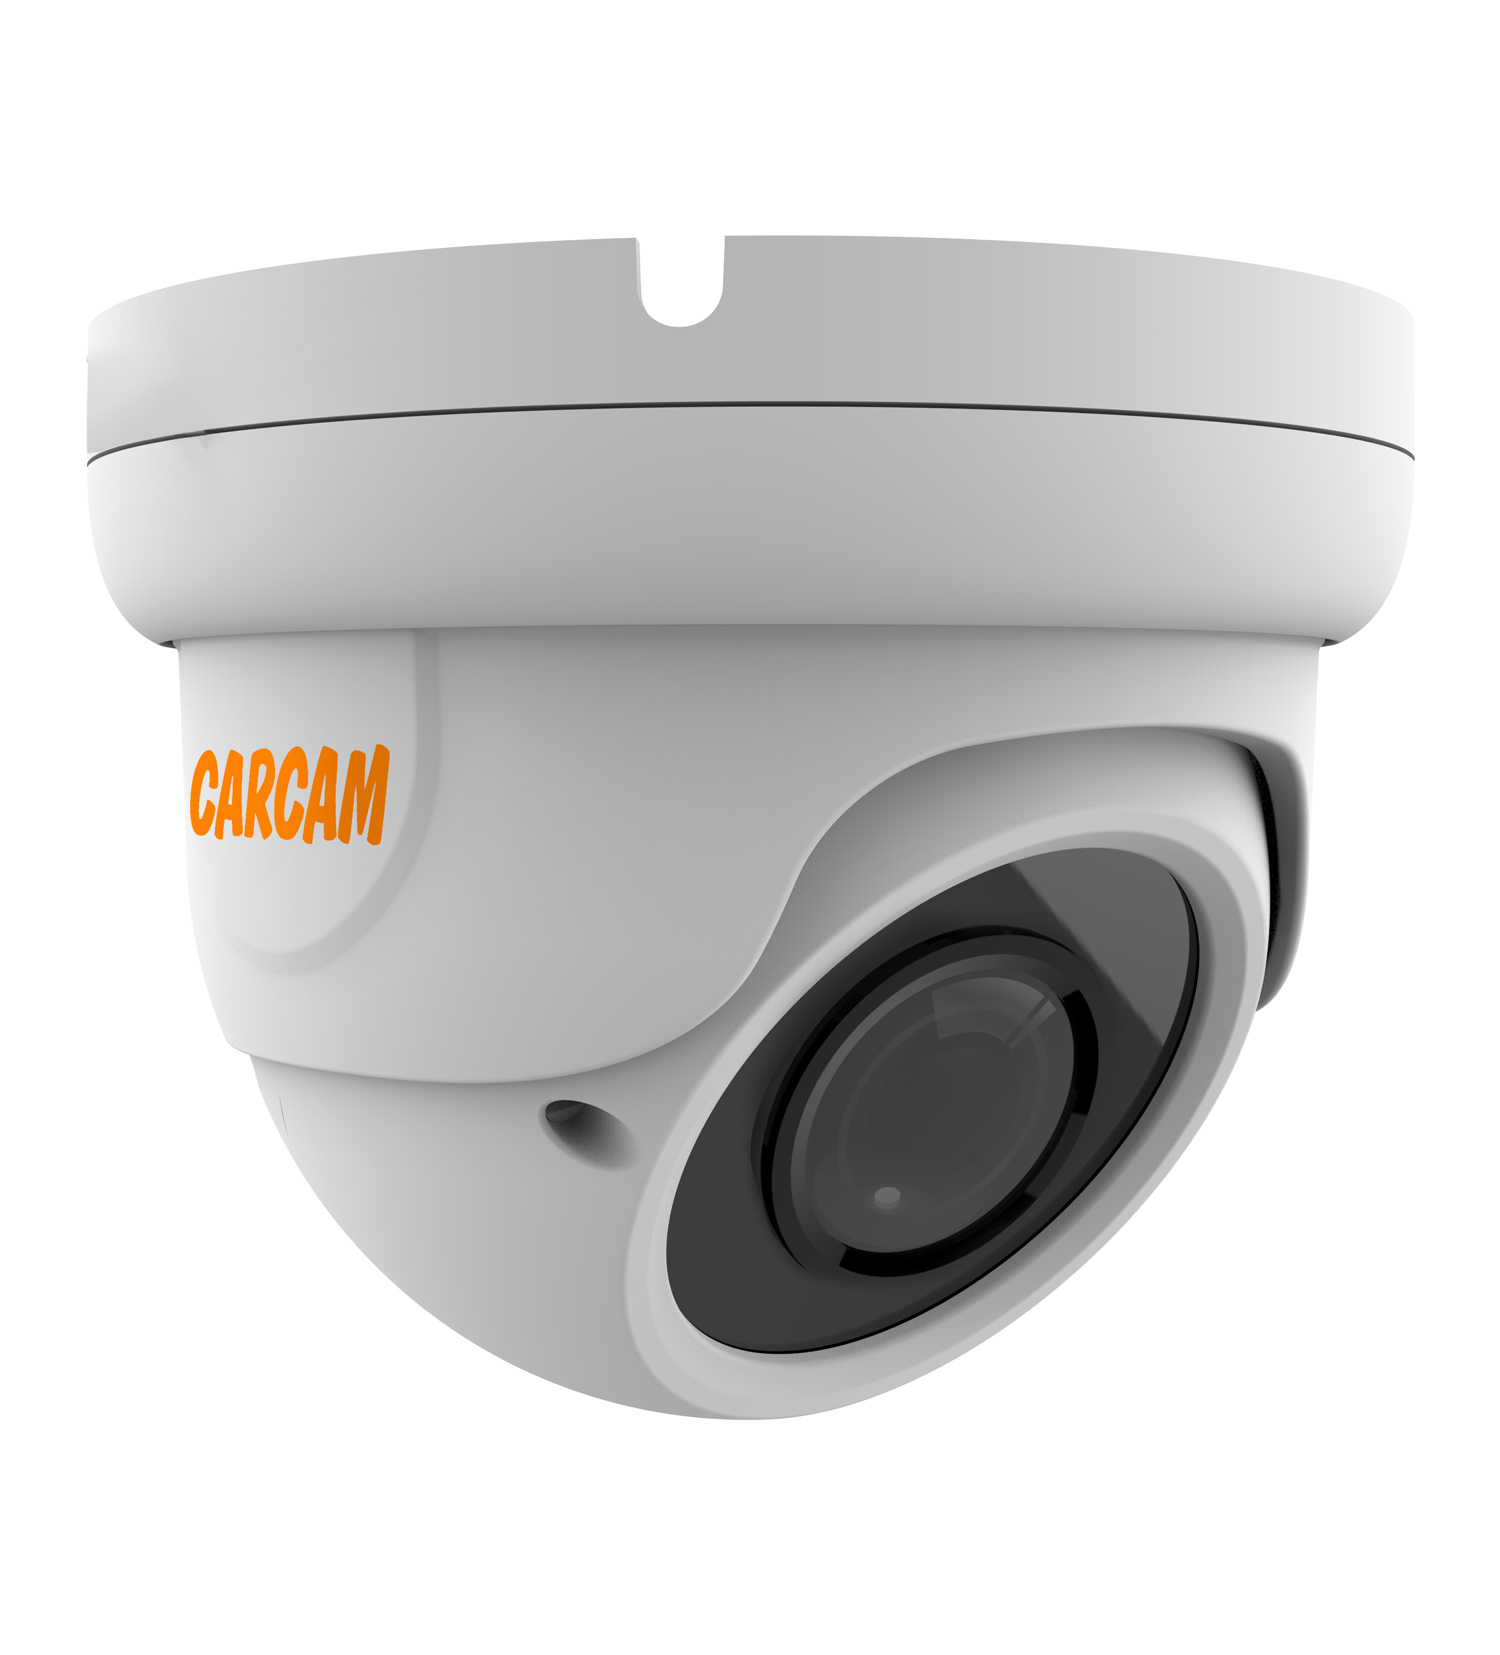 Купольная AHD-камера CARCAM 2MP Dome HD Camera 2041 (2.8-12mm) купольная ip камера carcam 5mp dome ip camera 5067m